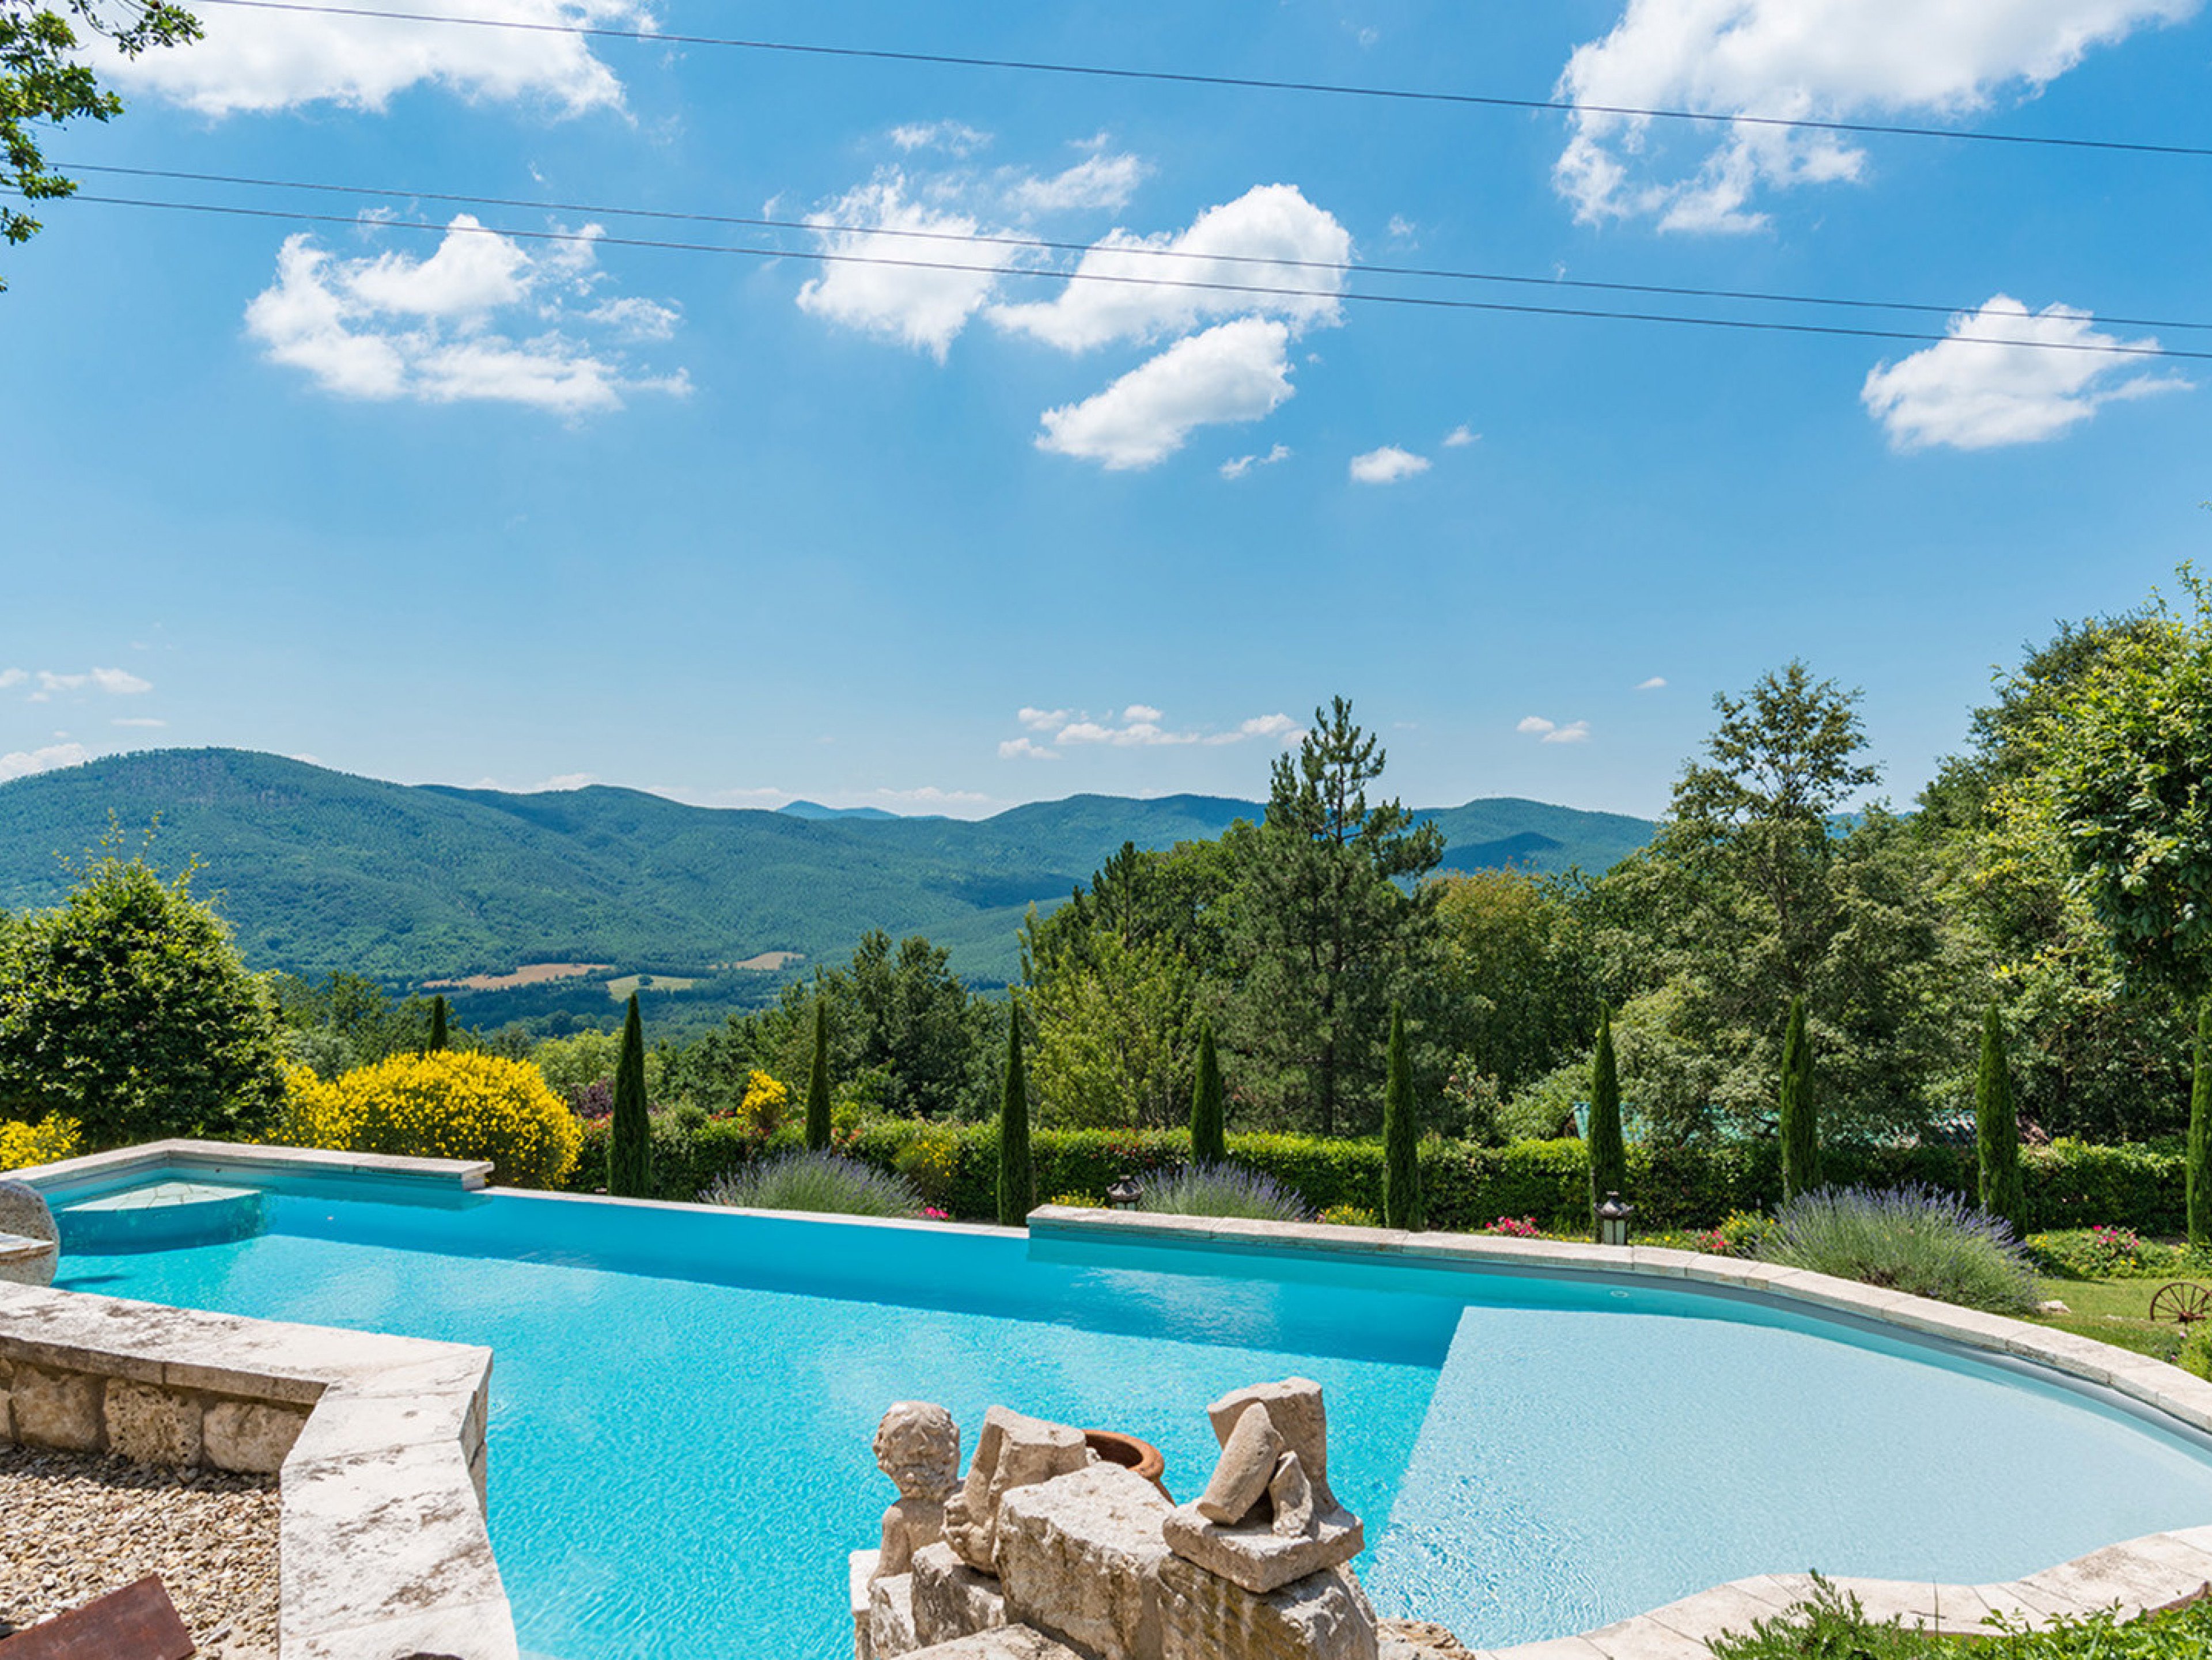 Borgo Paradiso - villa near Siena with pool